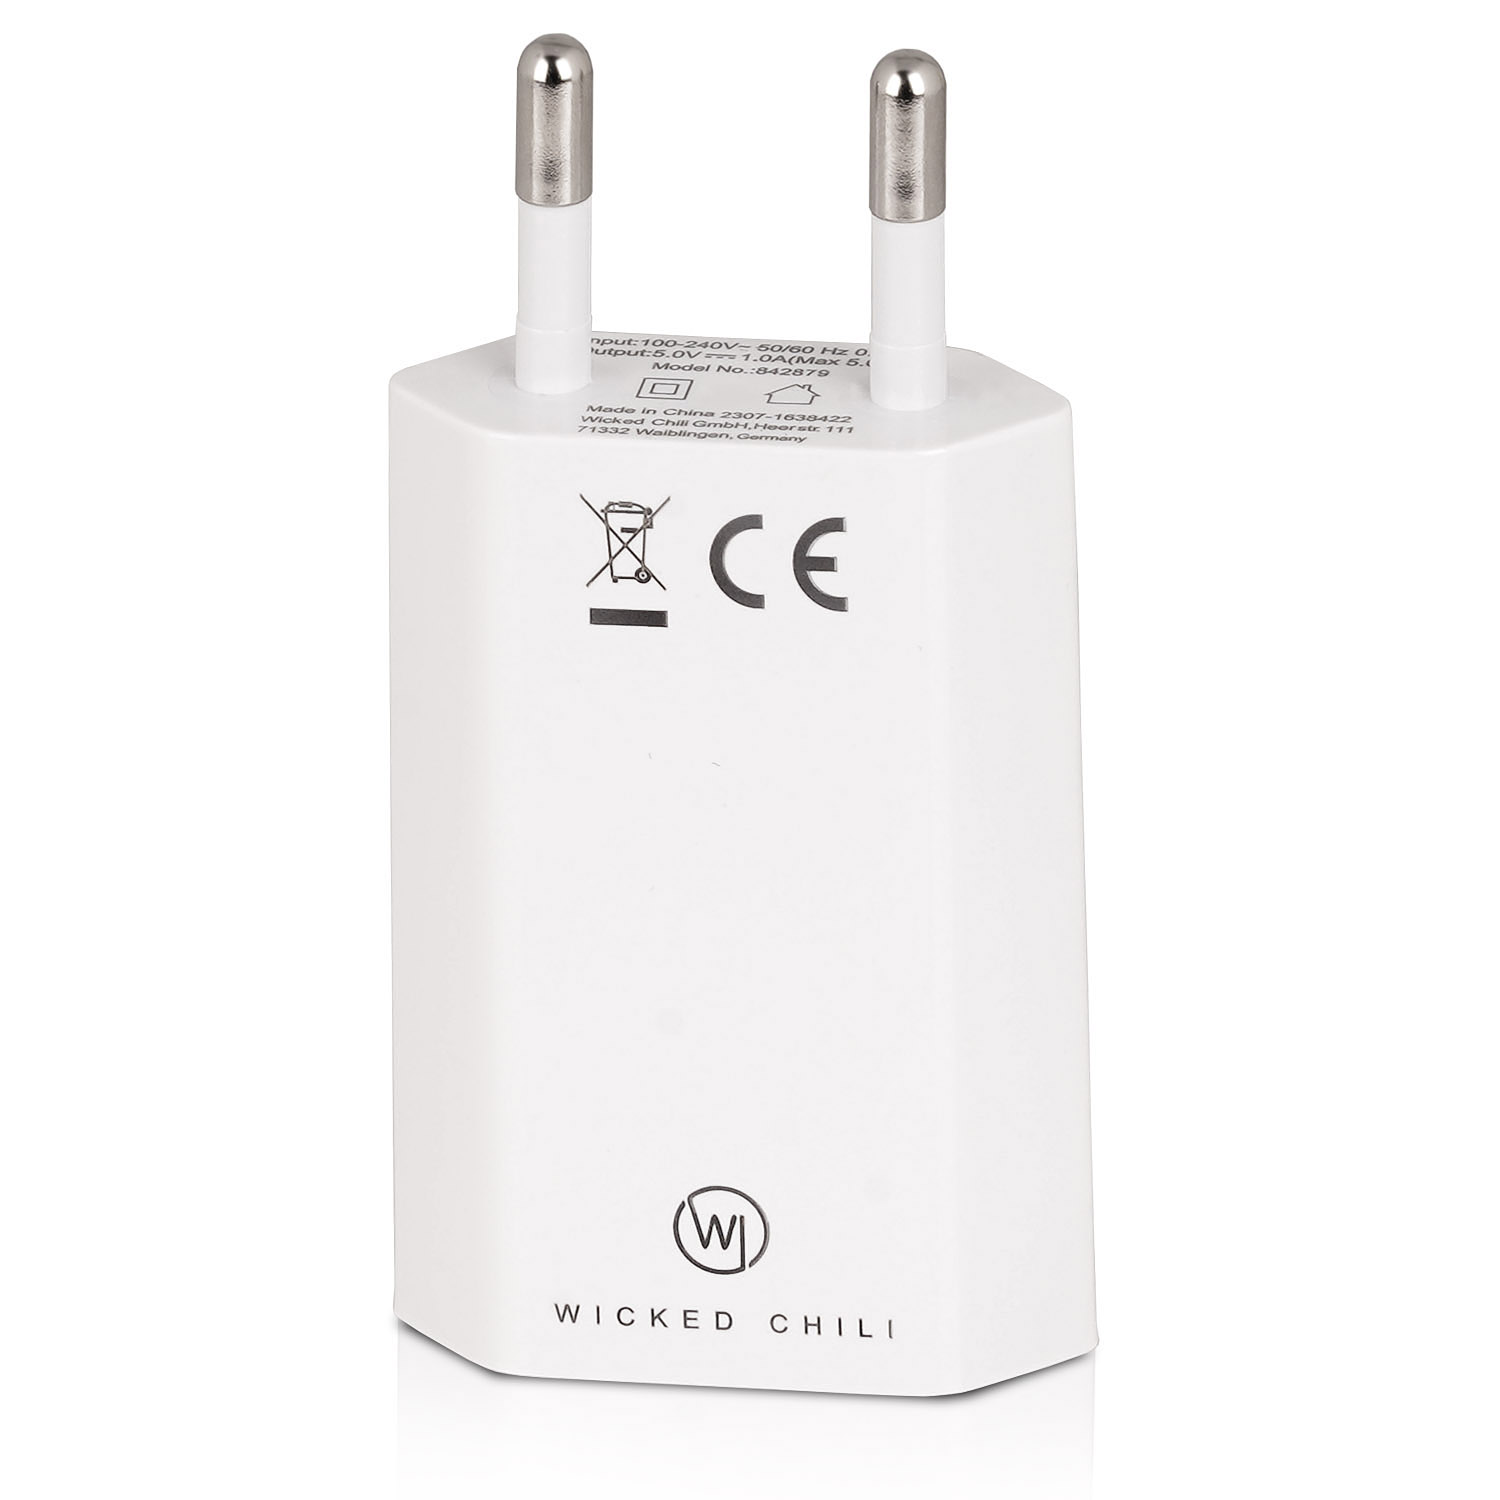 WICKED CHILI 2x 5W Netzteil Handy (5V Smartphone Netzstecker für Steckernetzteil Apple / Samsung Galaxy USB Adapter / iPhone 1A) / Ladegerät